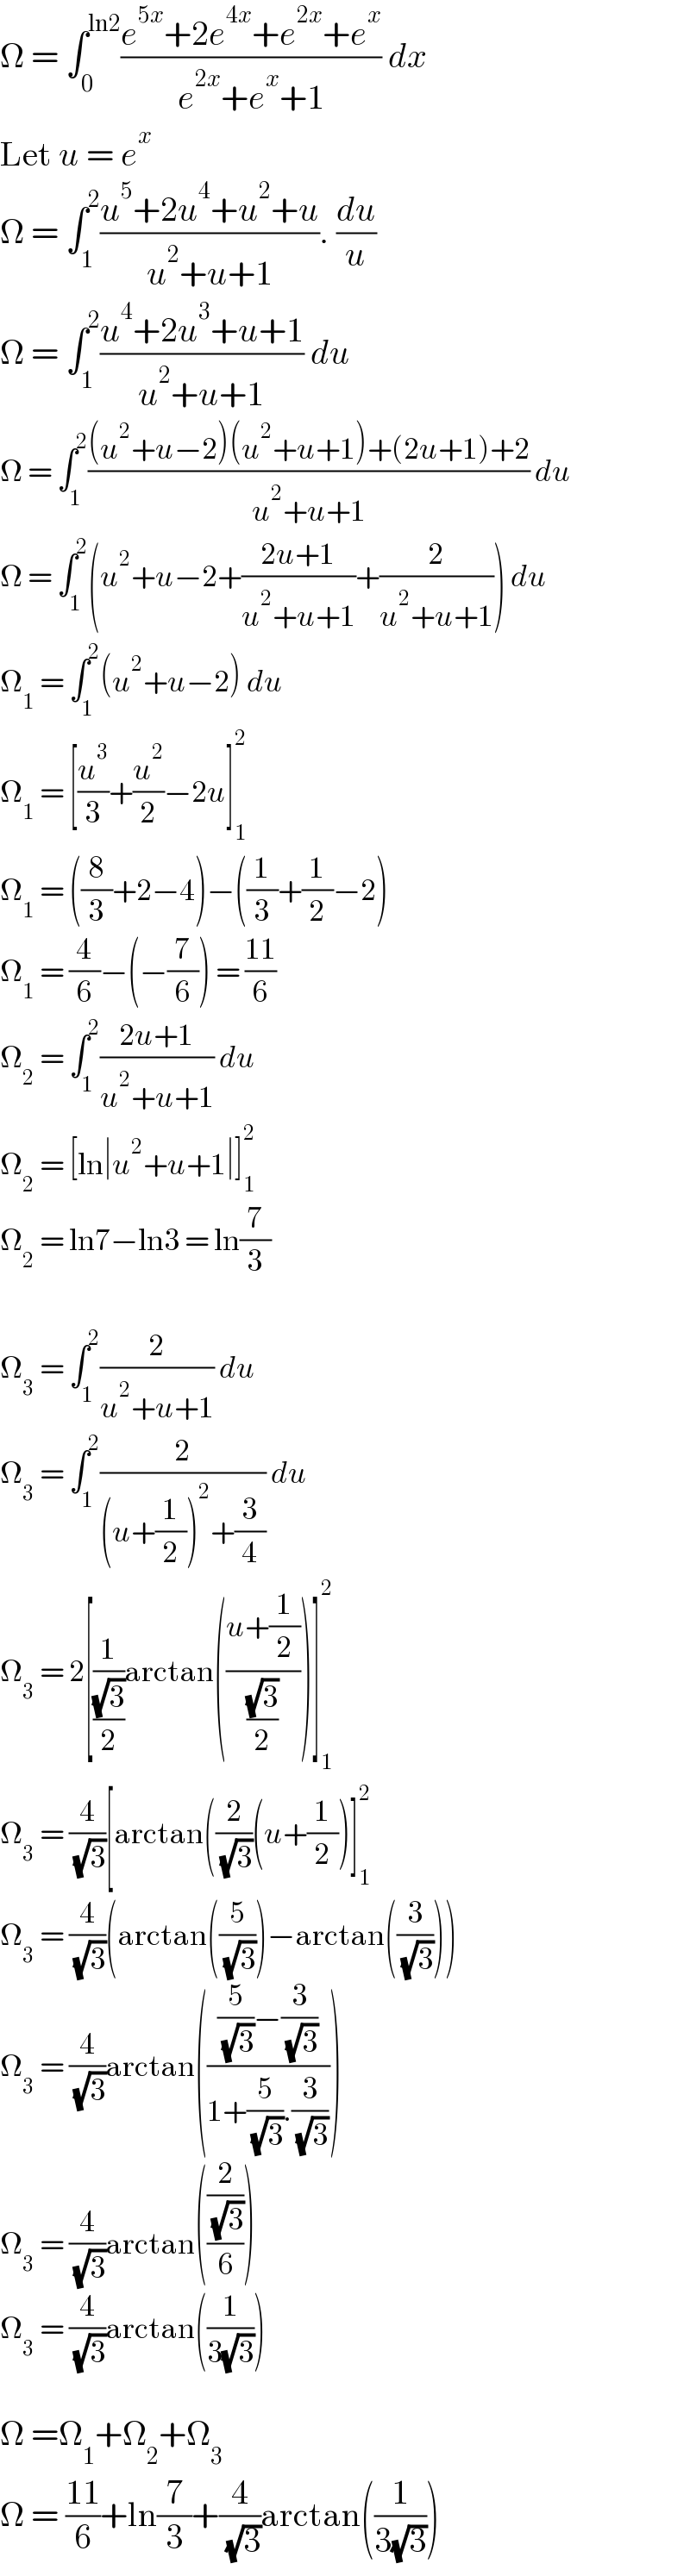 Ω = ∫_0 ^(ln2) ((e^(5x) +2e^(4x) +e^(2x) +e^x )/(e^(2x) +e^x +1)) dx  Let u = e^x   Ω = ∫_1 ^2 ((u^5 +2u^4 +u^2 +u)/(u^2 +u+1)). (du/u)  Ω = ∫_1 ^2 ((u^4 +2u^3 +u+1)/(u^2 +u+1)) du  Ω = ∫_1 ^2 (((u^2 +u−2)(u^2 +u+1)+(2u+1)+2)/(u^2 +u+1)) du  Ω = ∫_1 ^2 (u^2 +u−2+((2u+1)/(u^2 +u+1))+(2/(u^2 +u+1))) du  Ω_1  = ∫_1 ^2 (u^2 +u−2) du  Ω_1  = [(u^3 /3)+(u^2 /2)−2u]_1 ^2   Ω_1  = ((8/3)+2−4)−((1/3)+(1/2)−2)  Ω_1  = (4/6)−(−(7/6)) = ((11)/6)  Ω_2  = ∫_1 ^2 ((2u+1)/(u^2 +u+1)) du  Ω_2  = [ln∣u^2 +u+1∣]_1 ^2   Ω_2  = ln7−ln3 = ln(7/3)    Ω_3  = ∫_1 ^2 (2/(u^2 +u+1)) du  Ω_3  = ∫_1 ^2 (2/((u+(1/2))^2 +(3/4))) du  Ω_3  = 2[(1/((√3)/2))arctan(((u+(1/2))/((√3)/2)))]_1 ^2   Ω_3  = (4/( (√3)))[arctan((2/( (√3)))(u+(1/2))]_1 ^2   Ω_3  = (4/( (√3)))(arctan((5/( (√3))))−arctan((3/( (√3)))))  Ω_3  = (4/( (√3)))arctan((((5/( (√3)))−(3/( (√3))))/(1+(5/( (√3))).(3/( (√3))))))  Ω_3  = (4/( (√3)))arctan(((2/( (√3)))/6))  Ω_3  = (4/( (√3)))arctan((1/(3(√3))))    Ω =Ω_1 +Ω_2 +Ω_3   Ω = ((11)/6)+ln(7/3)+(4/( (√3)))arctan((1/(3(√3))))  